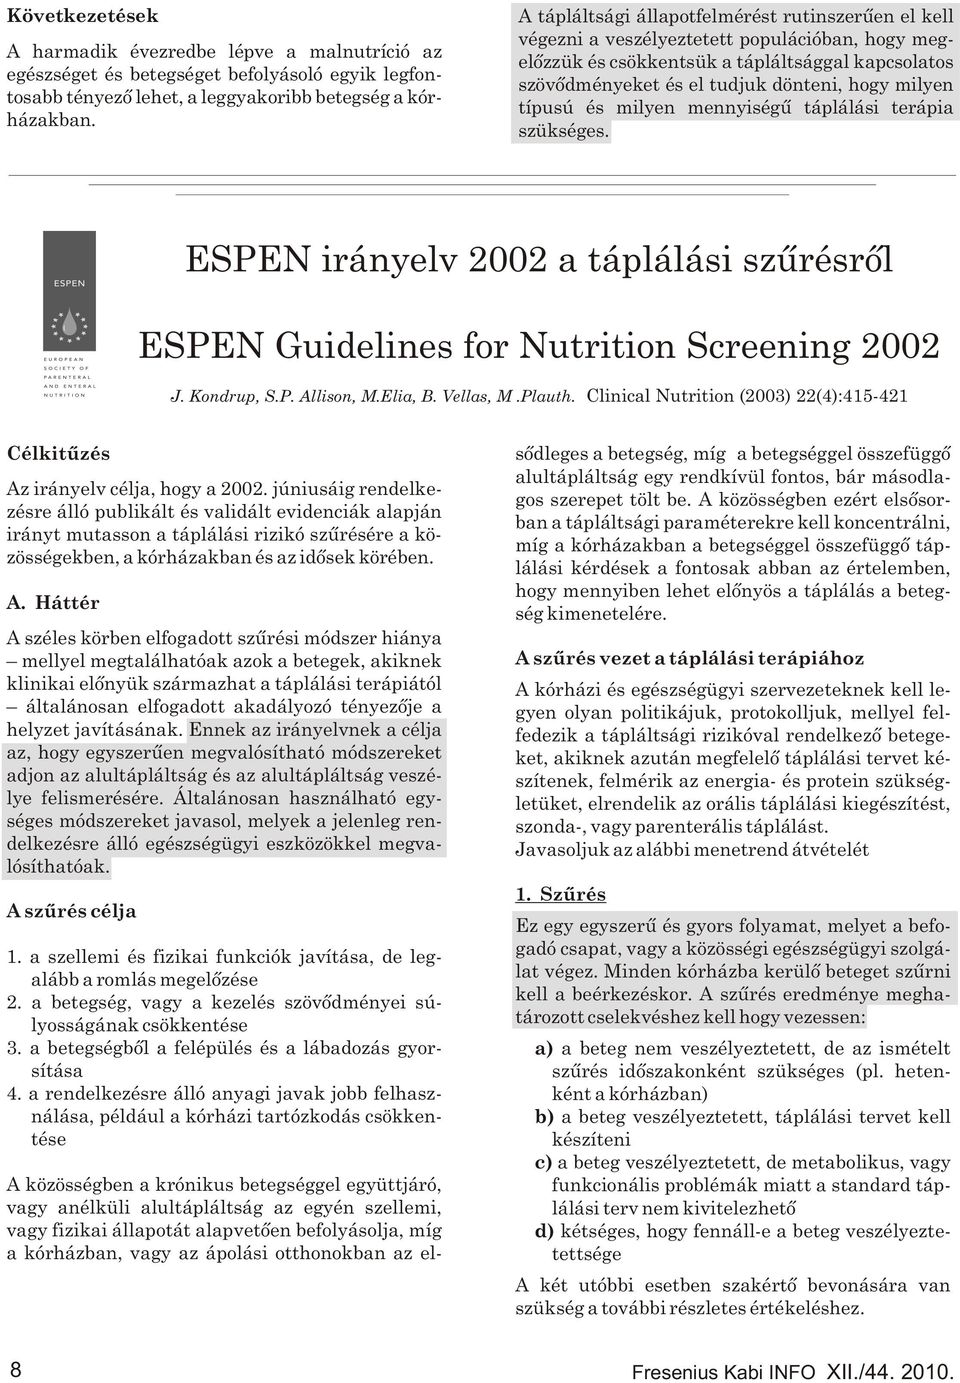 típusú és milyen mennyiségû táplálási terápia szükséges. ESPEN irányelv 2002 a táplálási szûrésrõl ESPEN Guidelines for Nutrition Screening 2002 J. Kondrup, S.P. Allison, M.Elia, B. Vellas, M.Plauth.